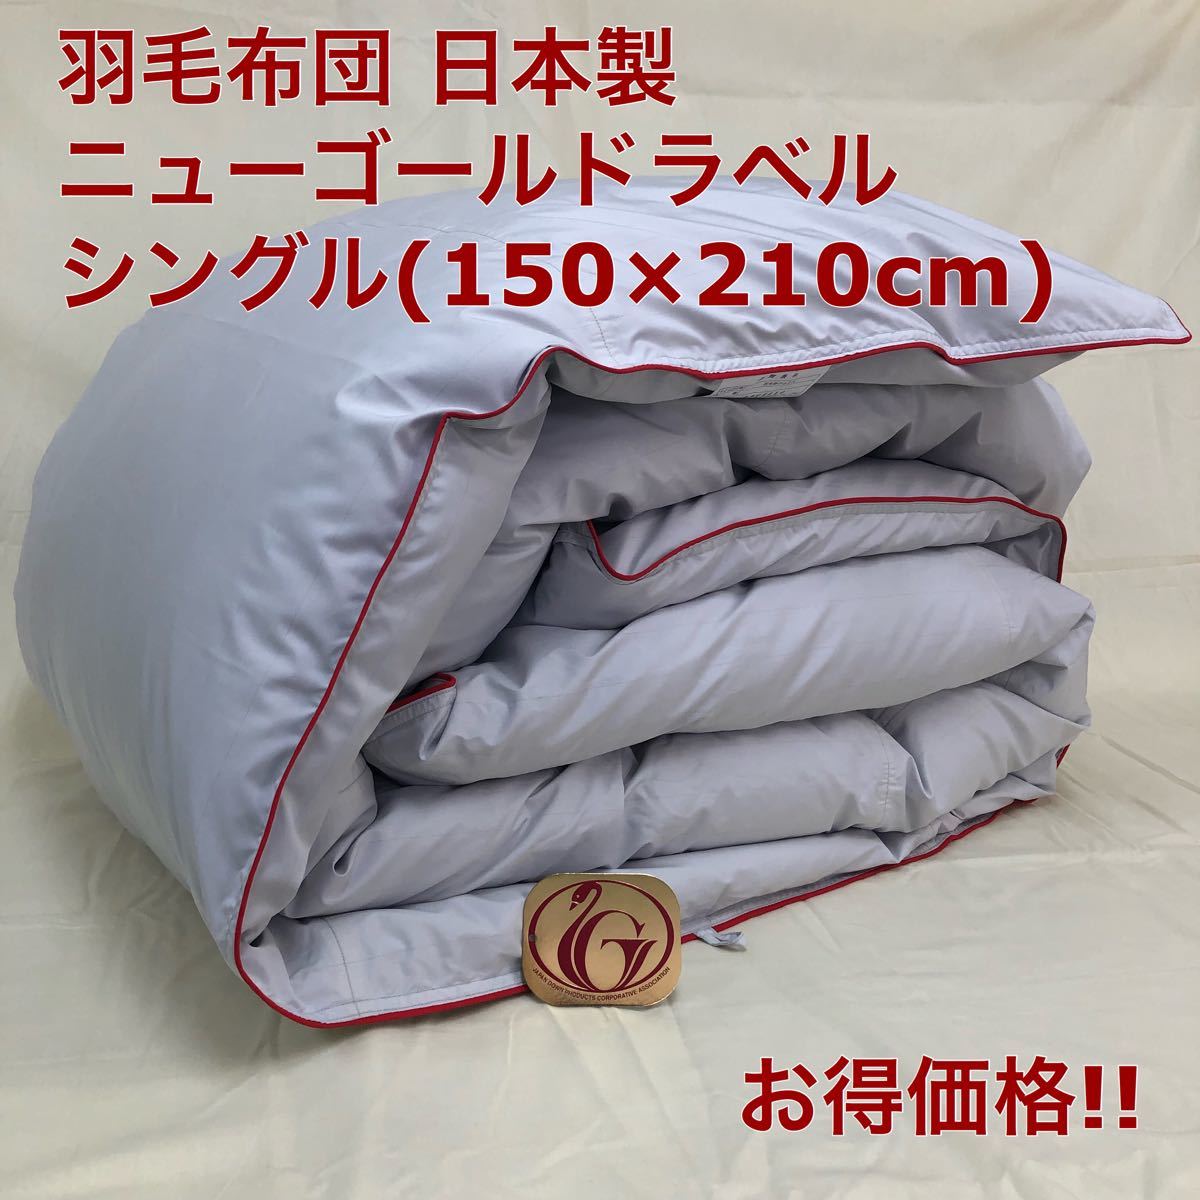 羽毛布団 シングル 大増量 ニューゴールド 白色 日本製 150 210cm 